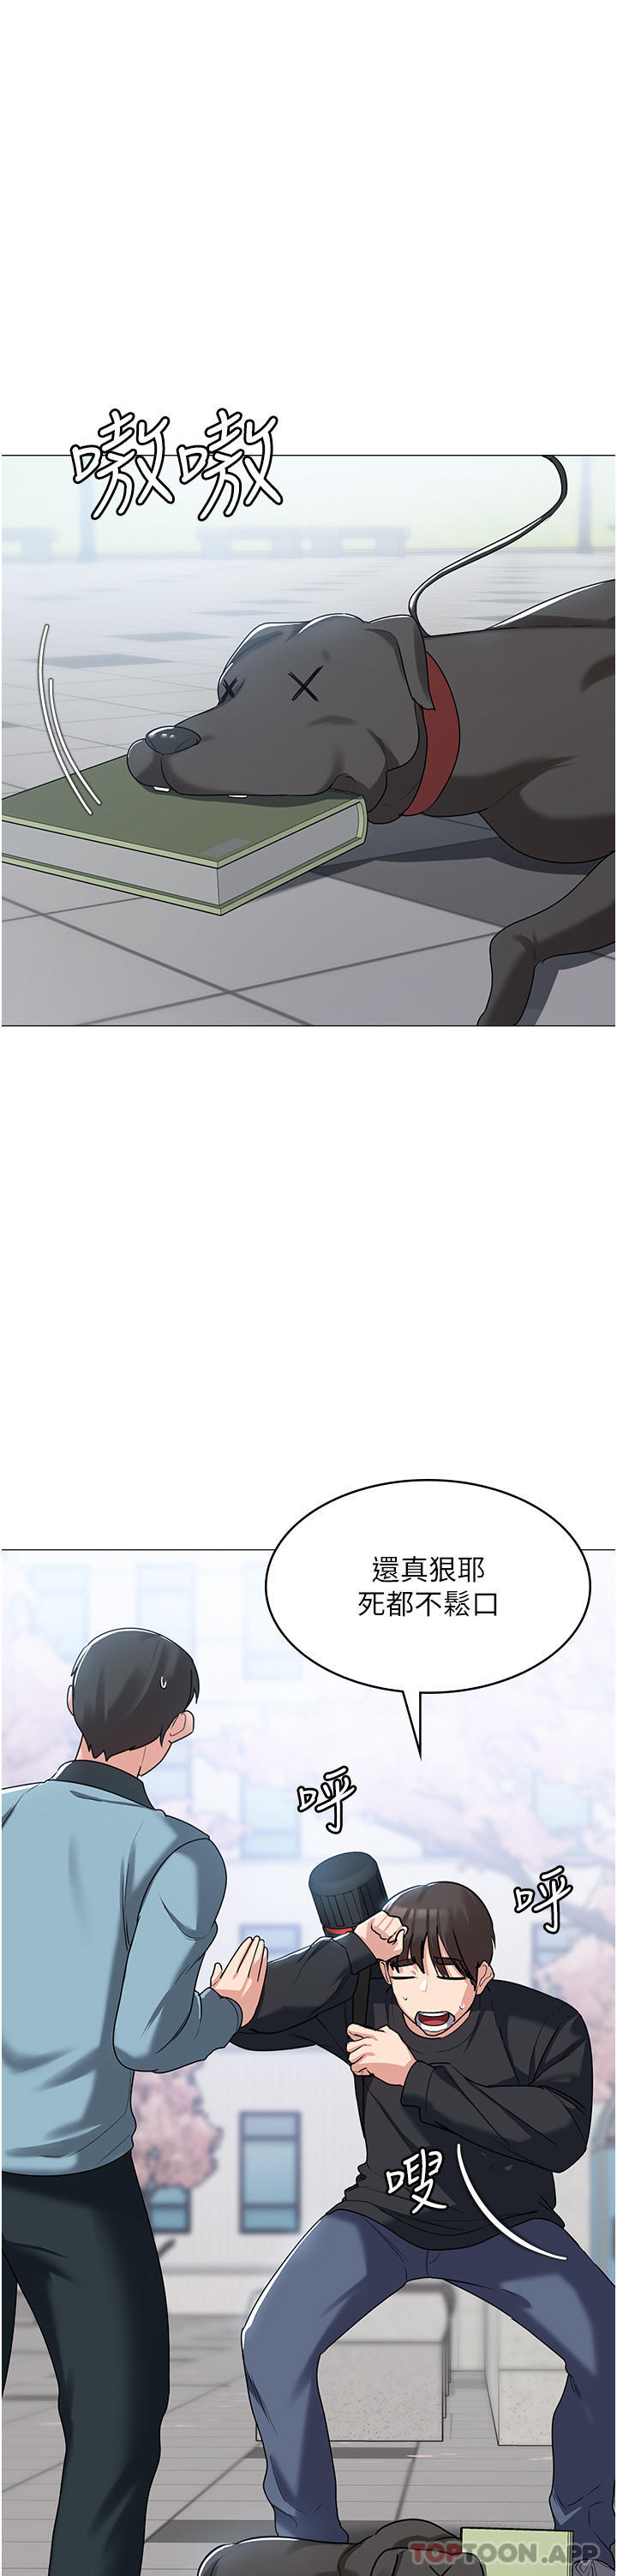 韩国污漫画 消災解餓 第3话-霸王色阳气的力量 43